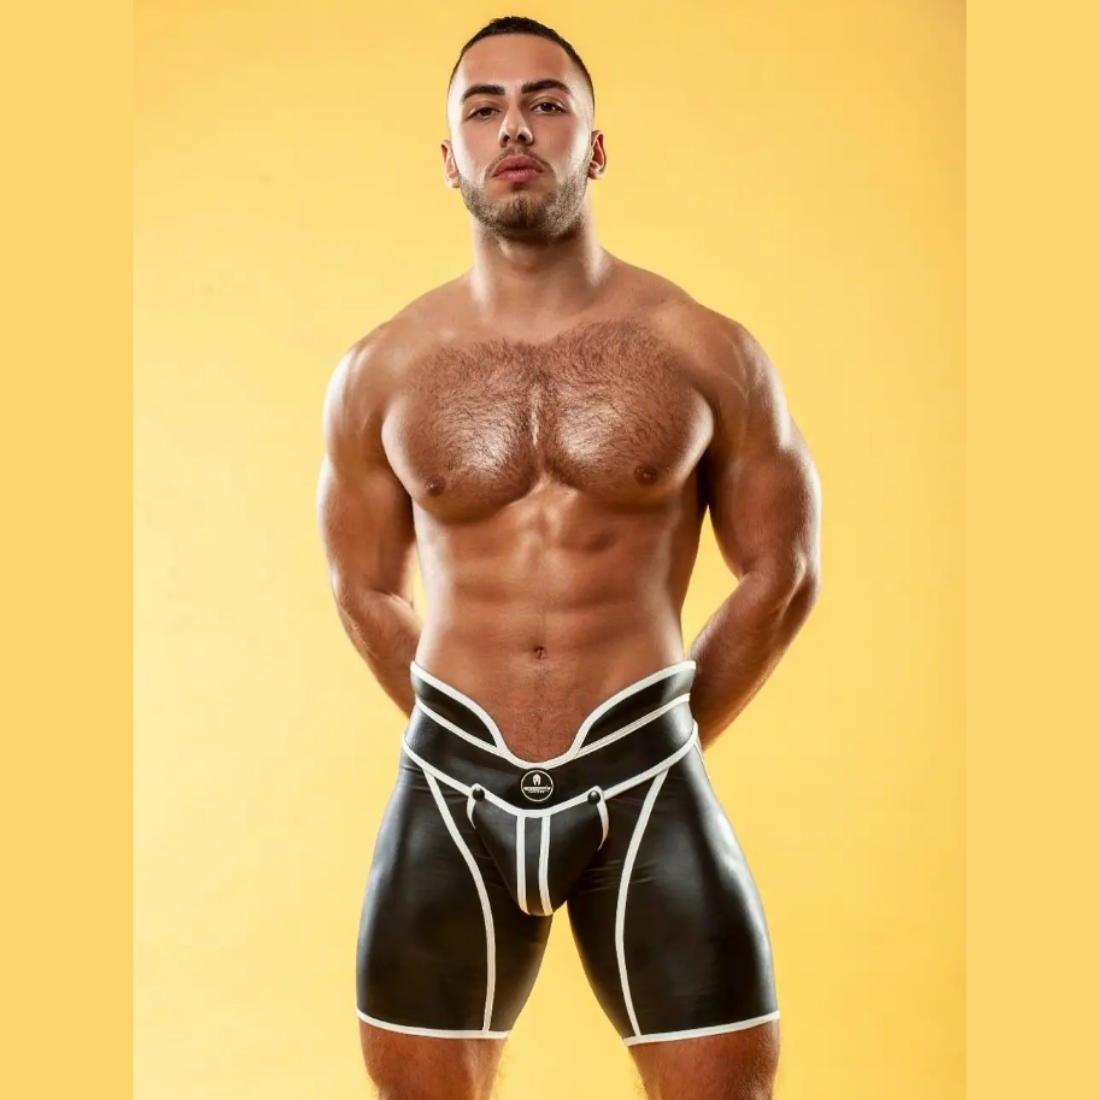 Unieke zwarte short met hoge tailleband en witte biezen, ontworpen door het Italiaanse modehuis Sparta’s Harness perfect voor gay mannen en te koop bij Flavourez.